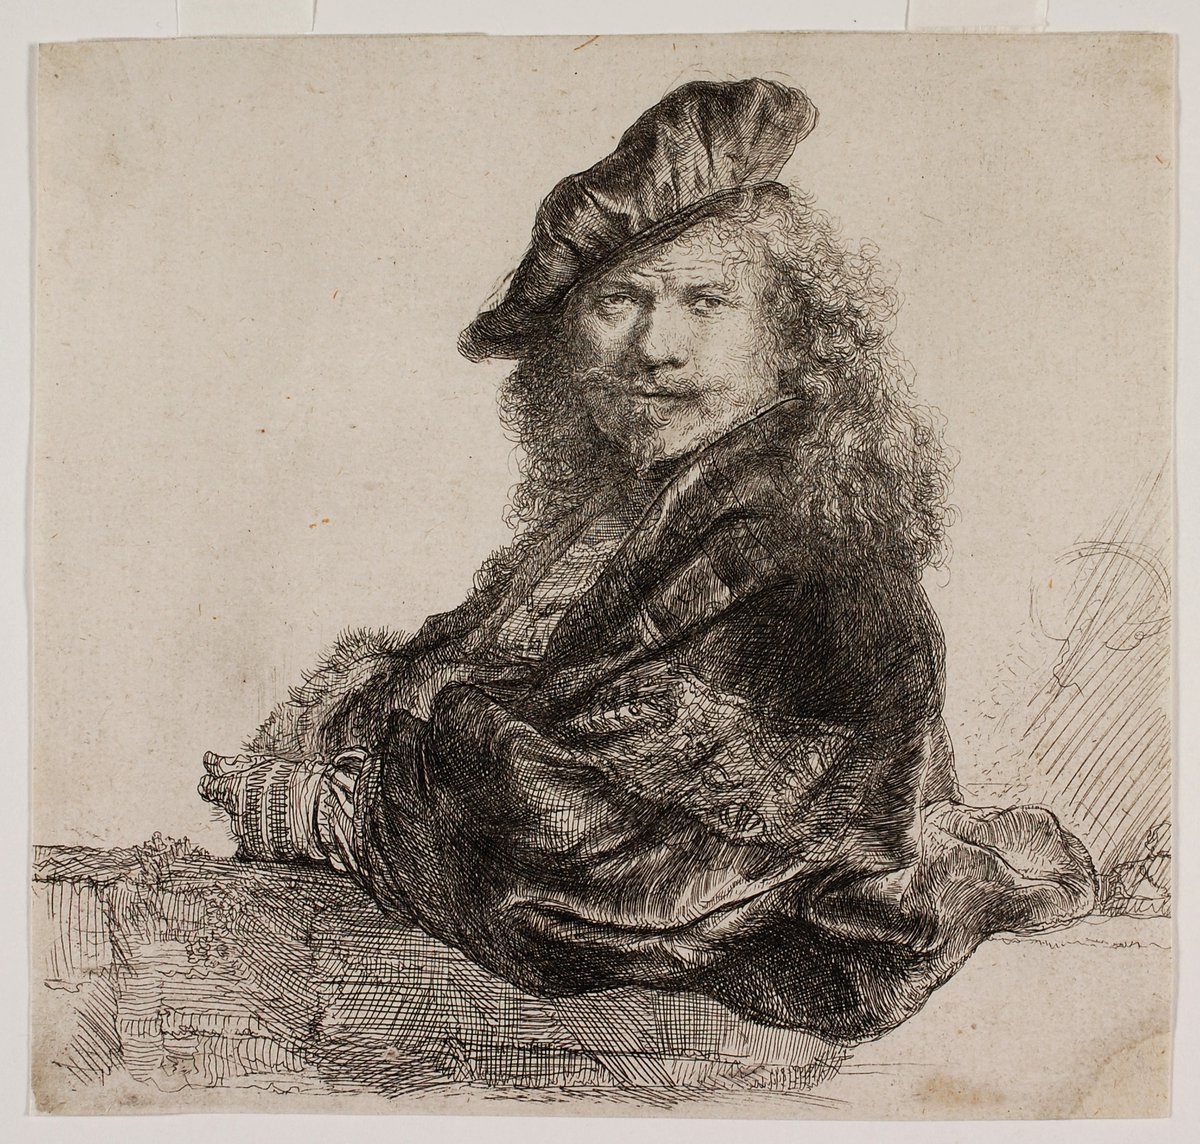 Getekend zelfportret. Rembrandt draagt een schuine baret, heeft lange golvende haren, een snor en een baard.